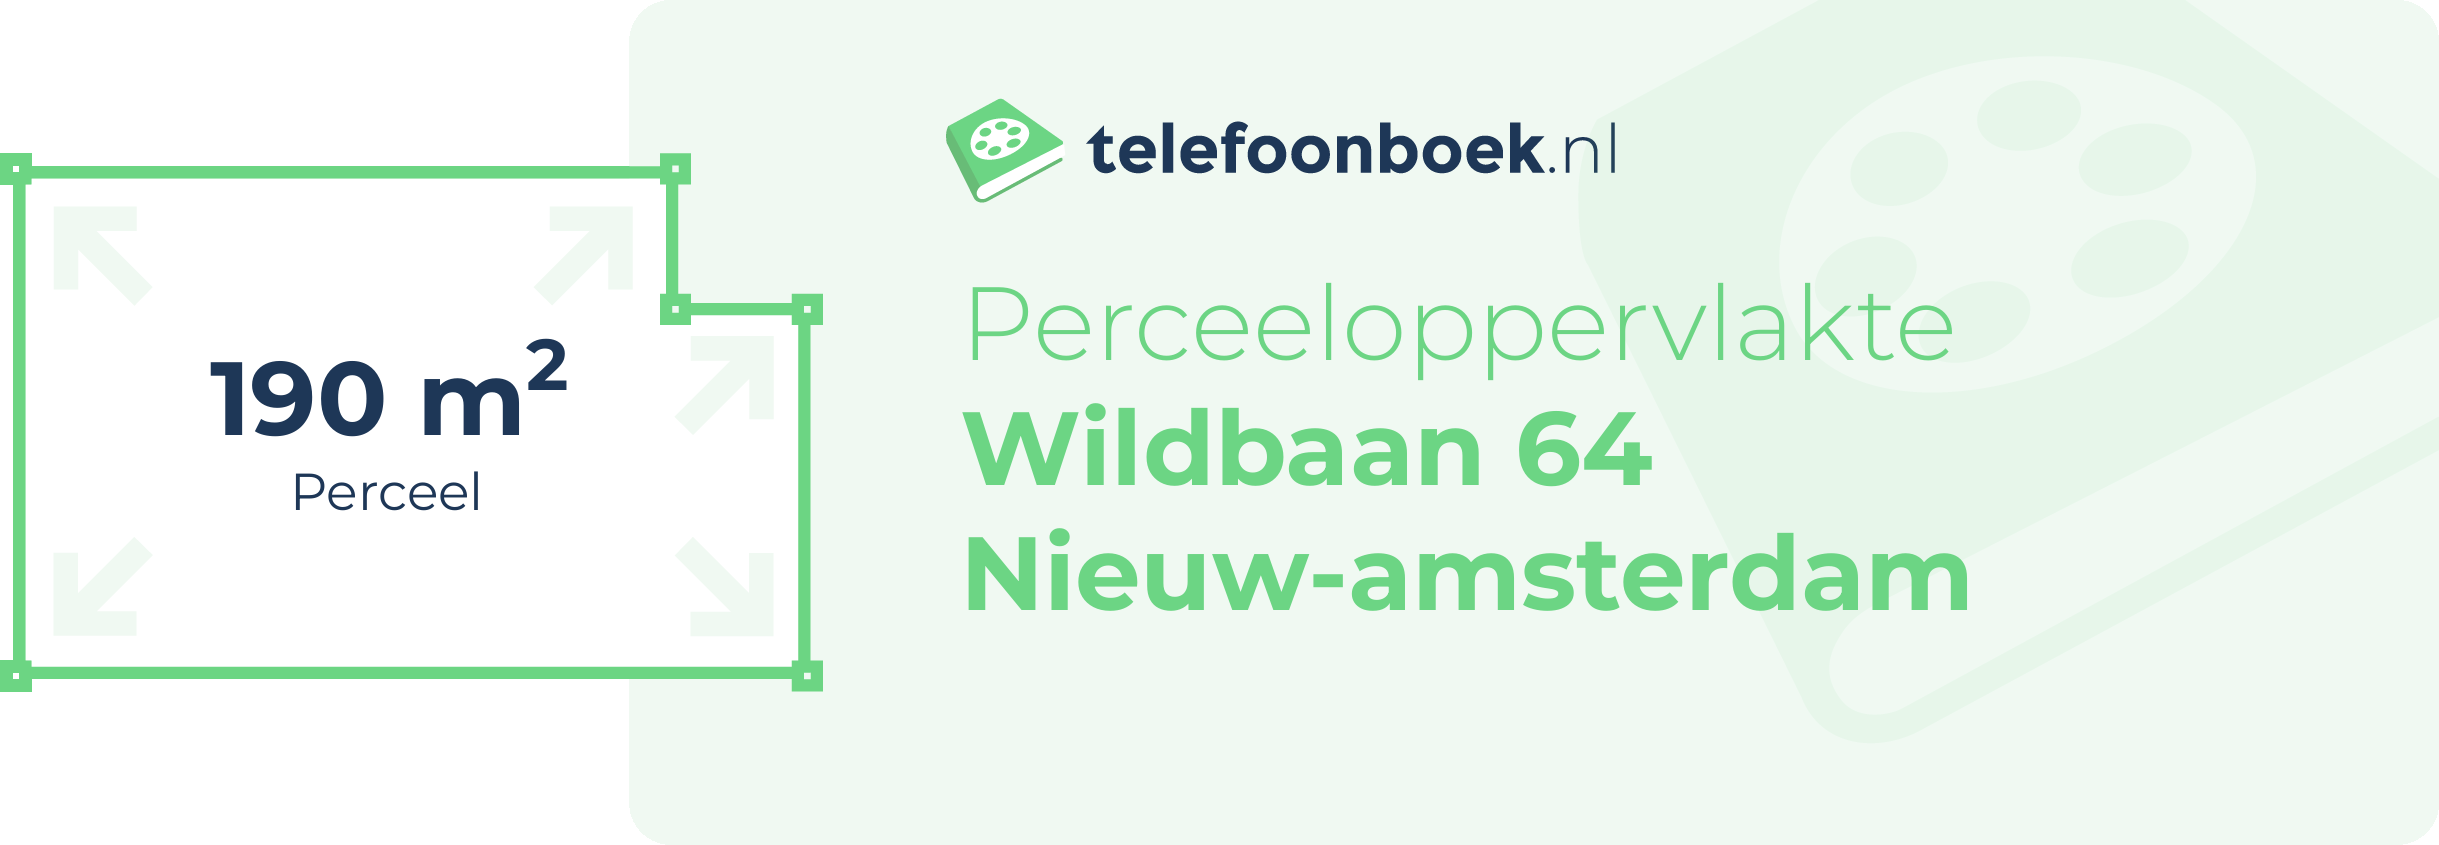 Perceeloppervlakte Wildbaan 64 Nieuw-Amsterdam